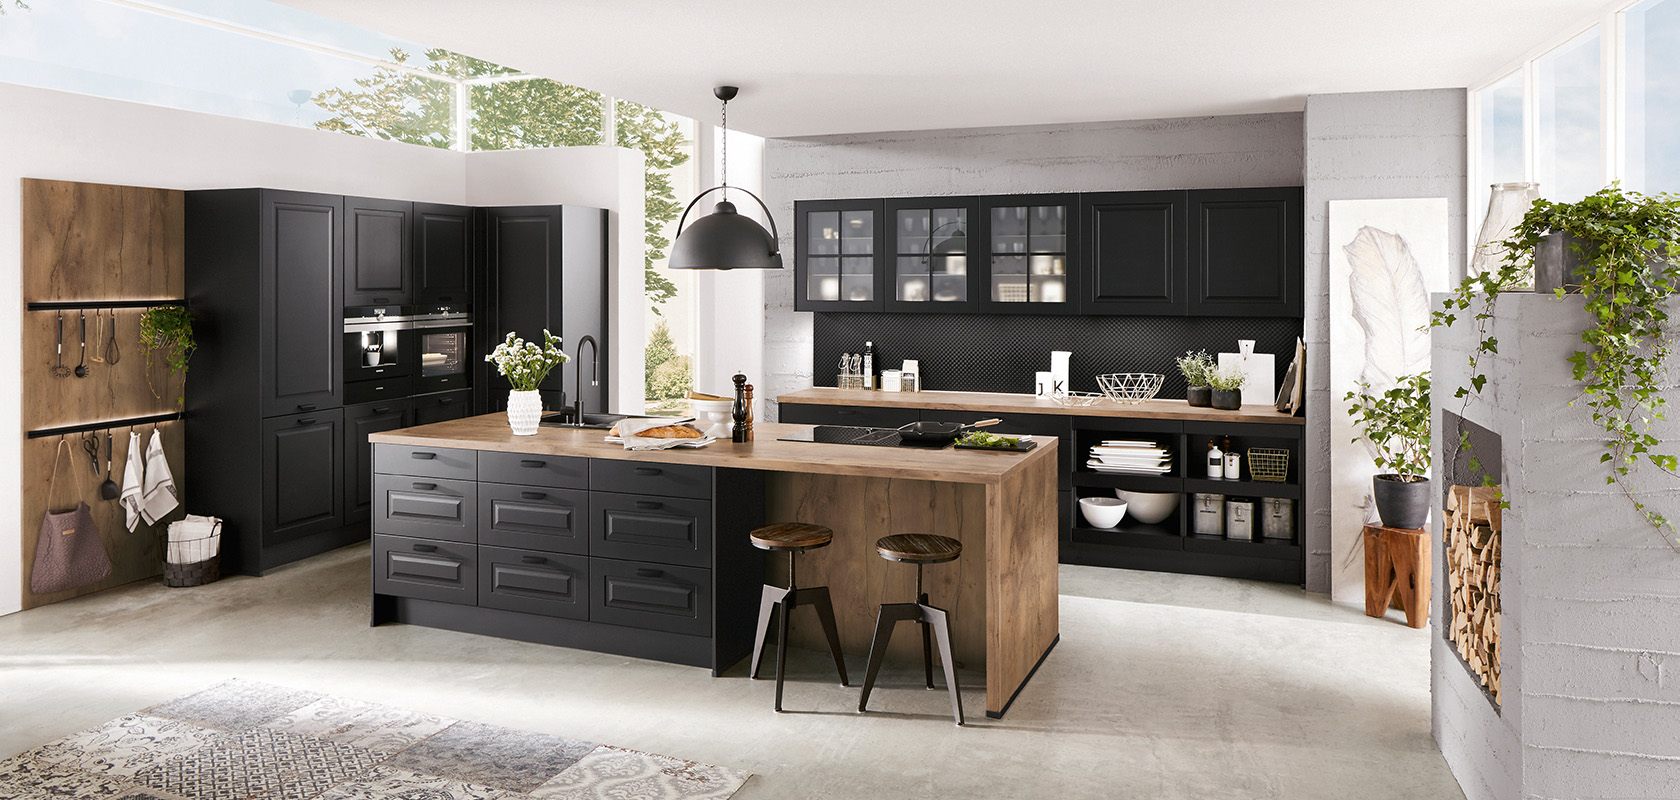 Interni di cucina moderna che mostrano eleganti armadi neri, dettagli in legno e un'isola centrale, arricchiti da luce naturale e verde per uno spazio elegante e accogliente.